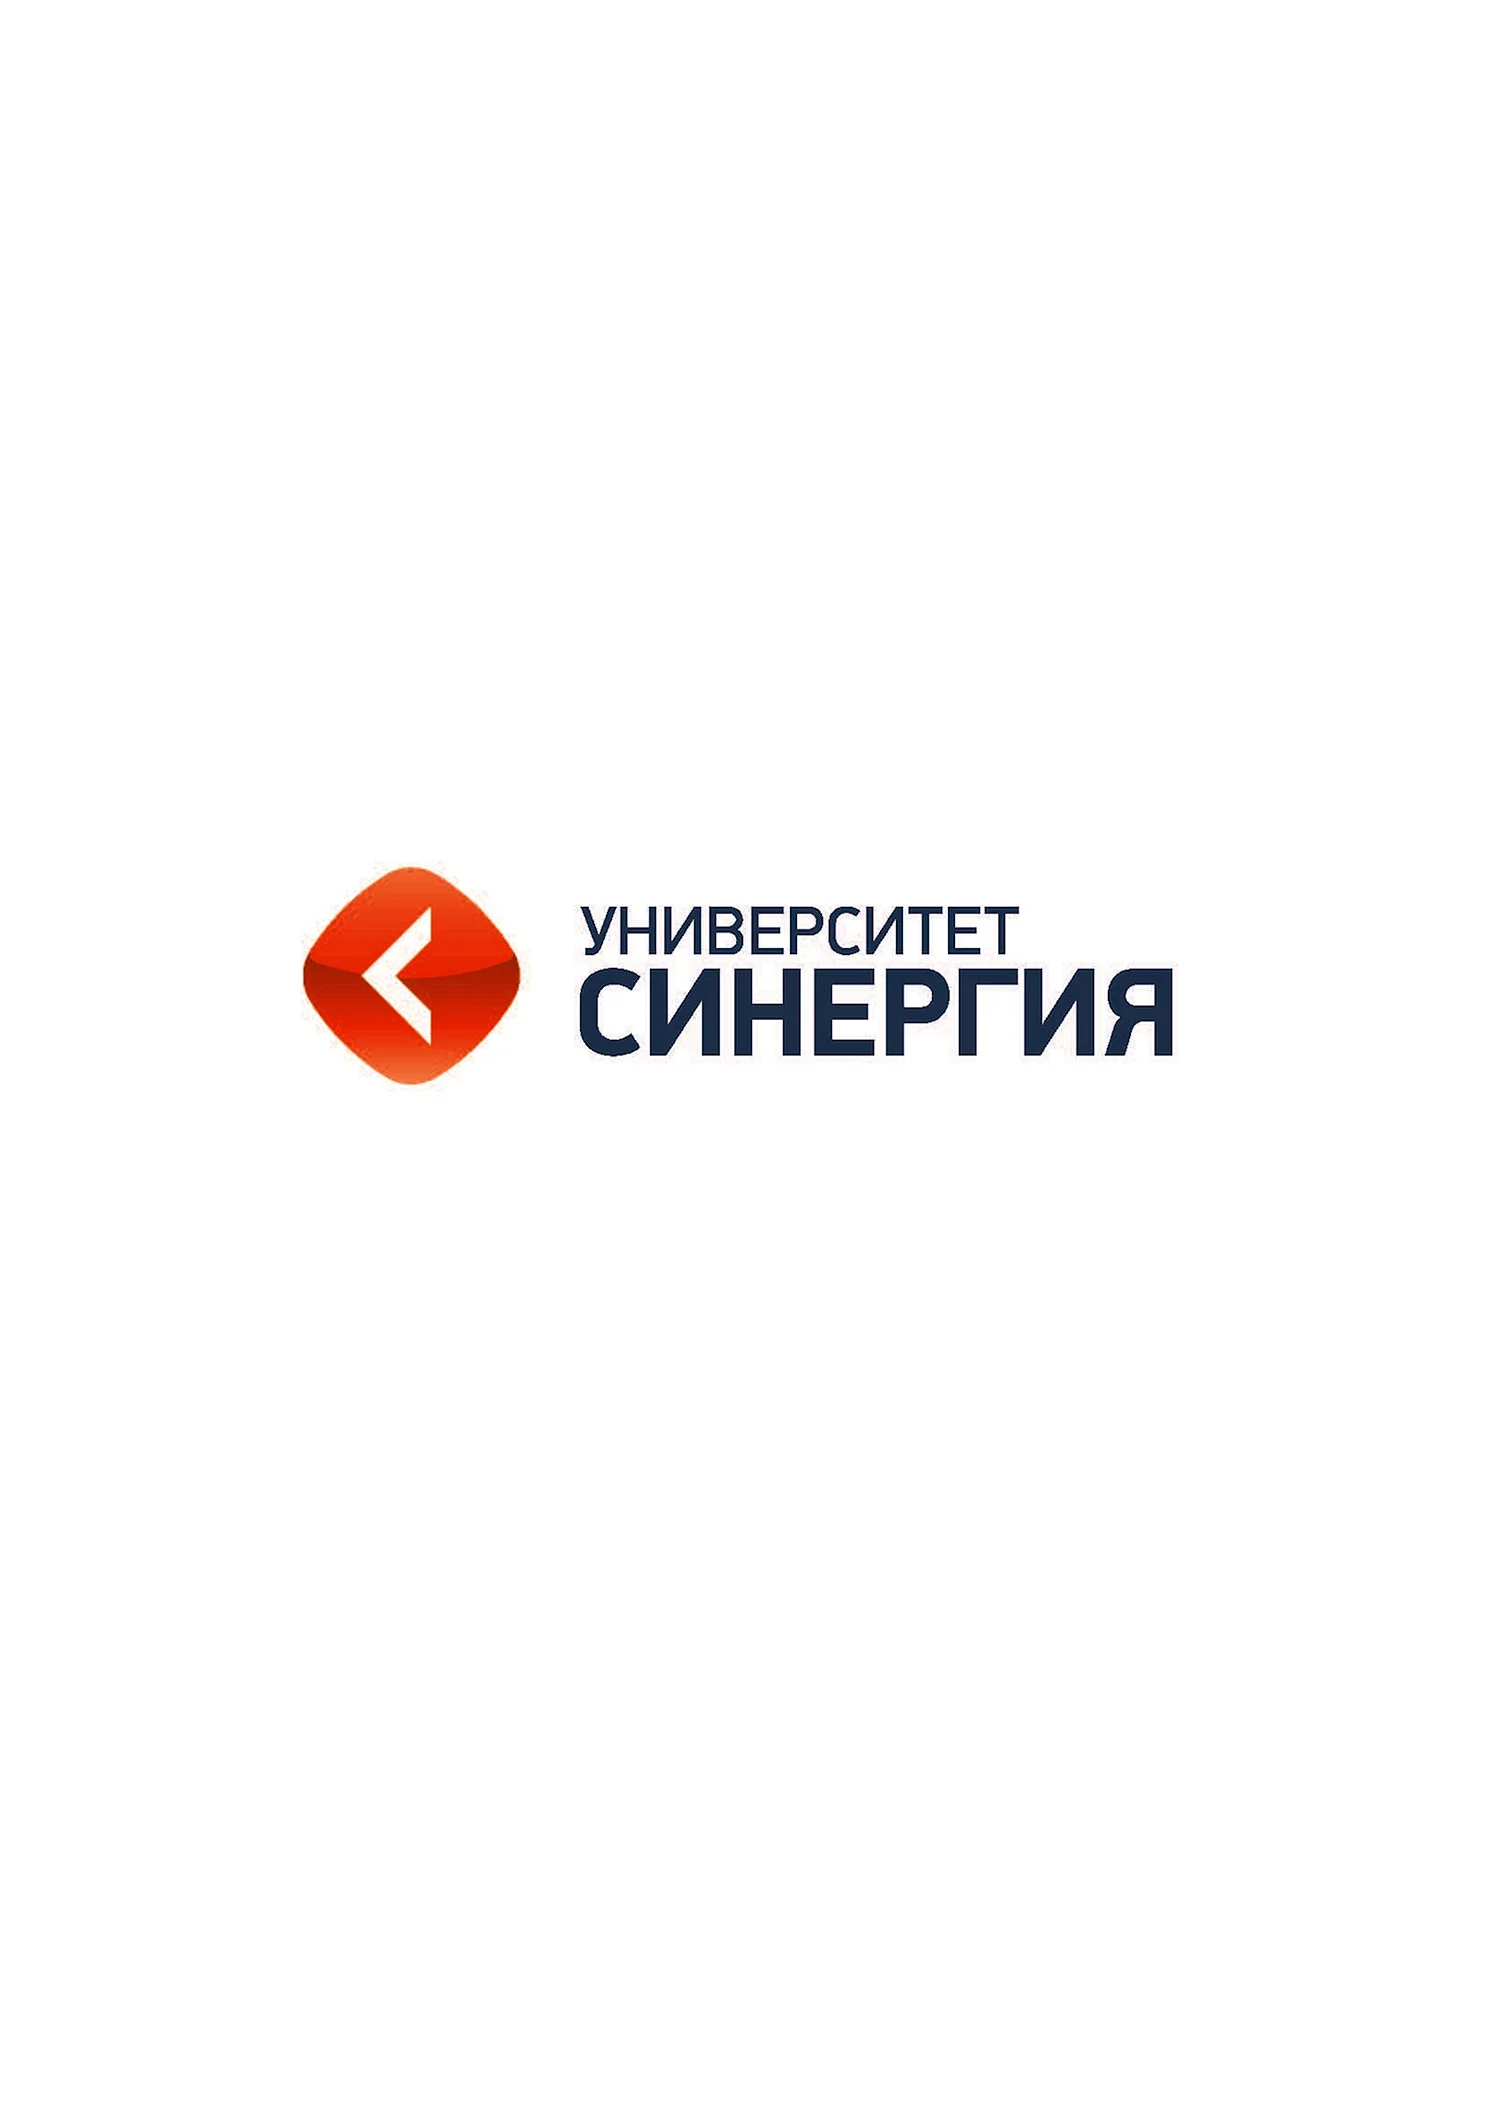 Московский финансово-промышленный университет «СИНЕРГИЯ лого